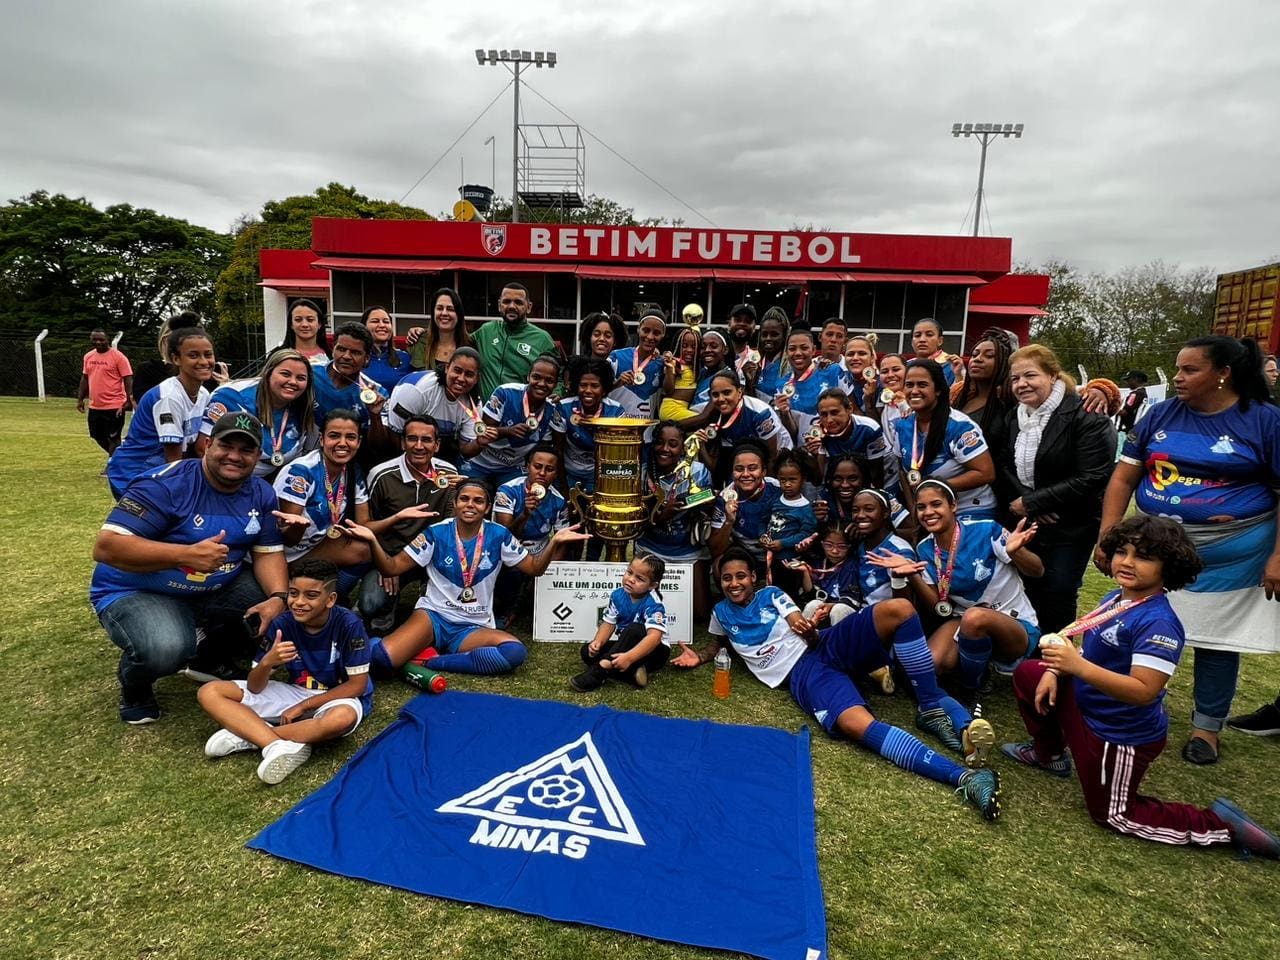 Minas venceu o Campeonato de Futebol Amador Feminino em Betim pela primeira vez